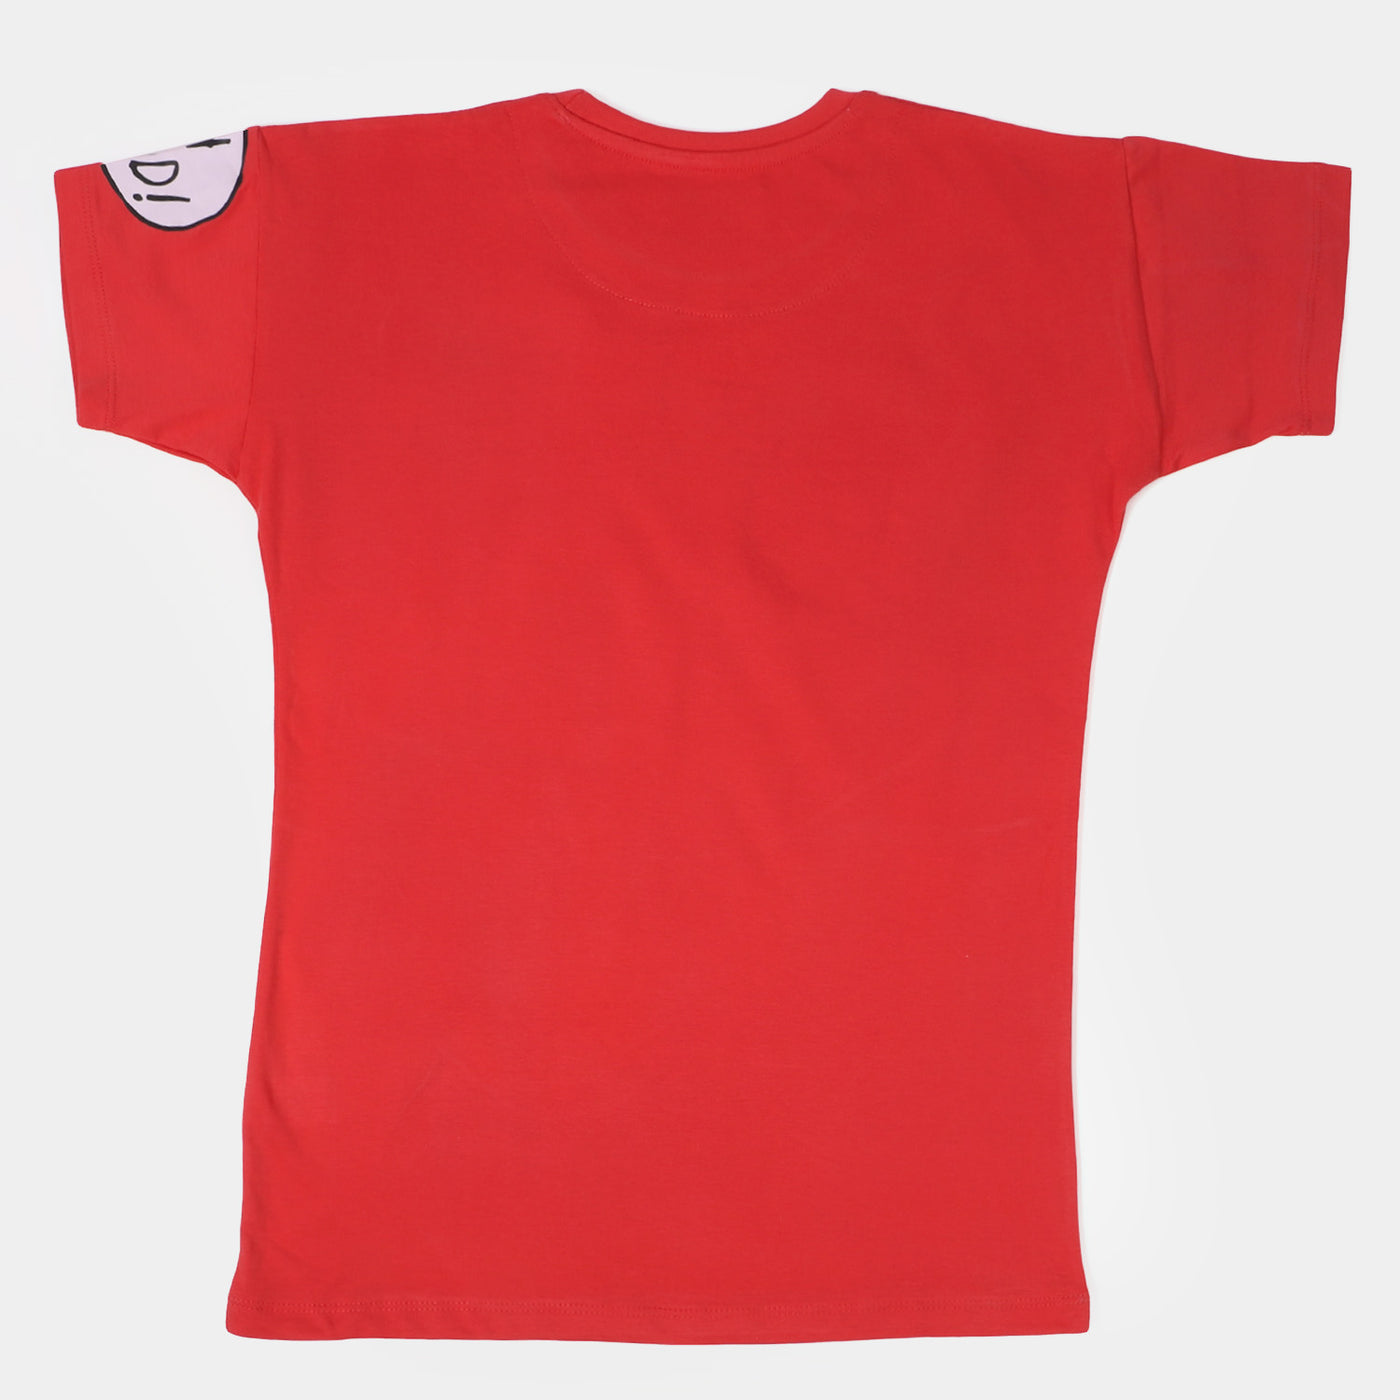 Teens Girls Cotton T-shirt Quiet - Poppy Red